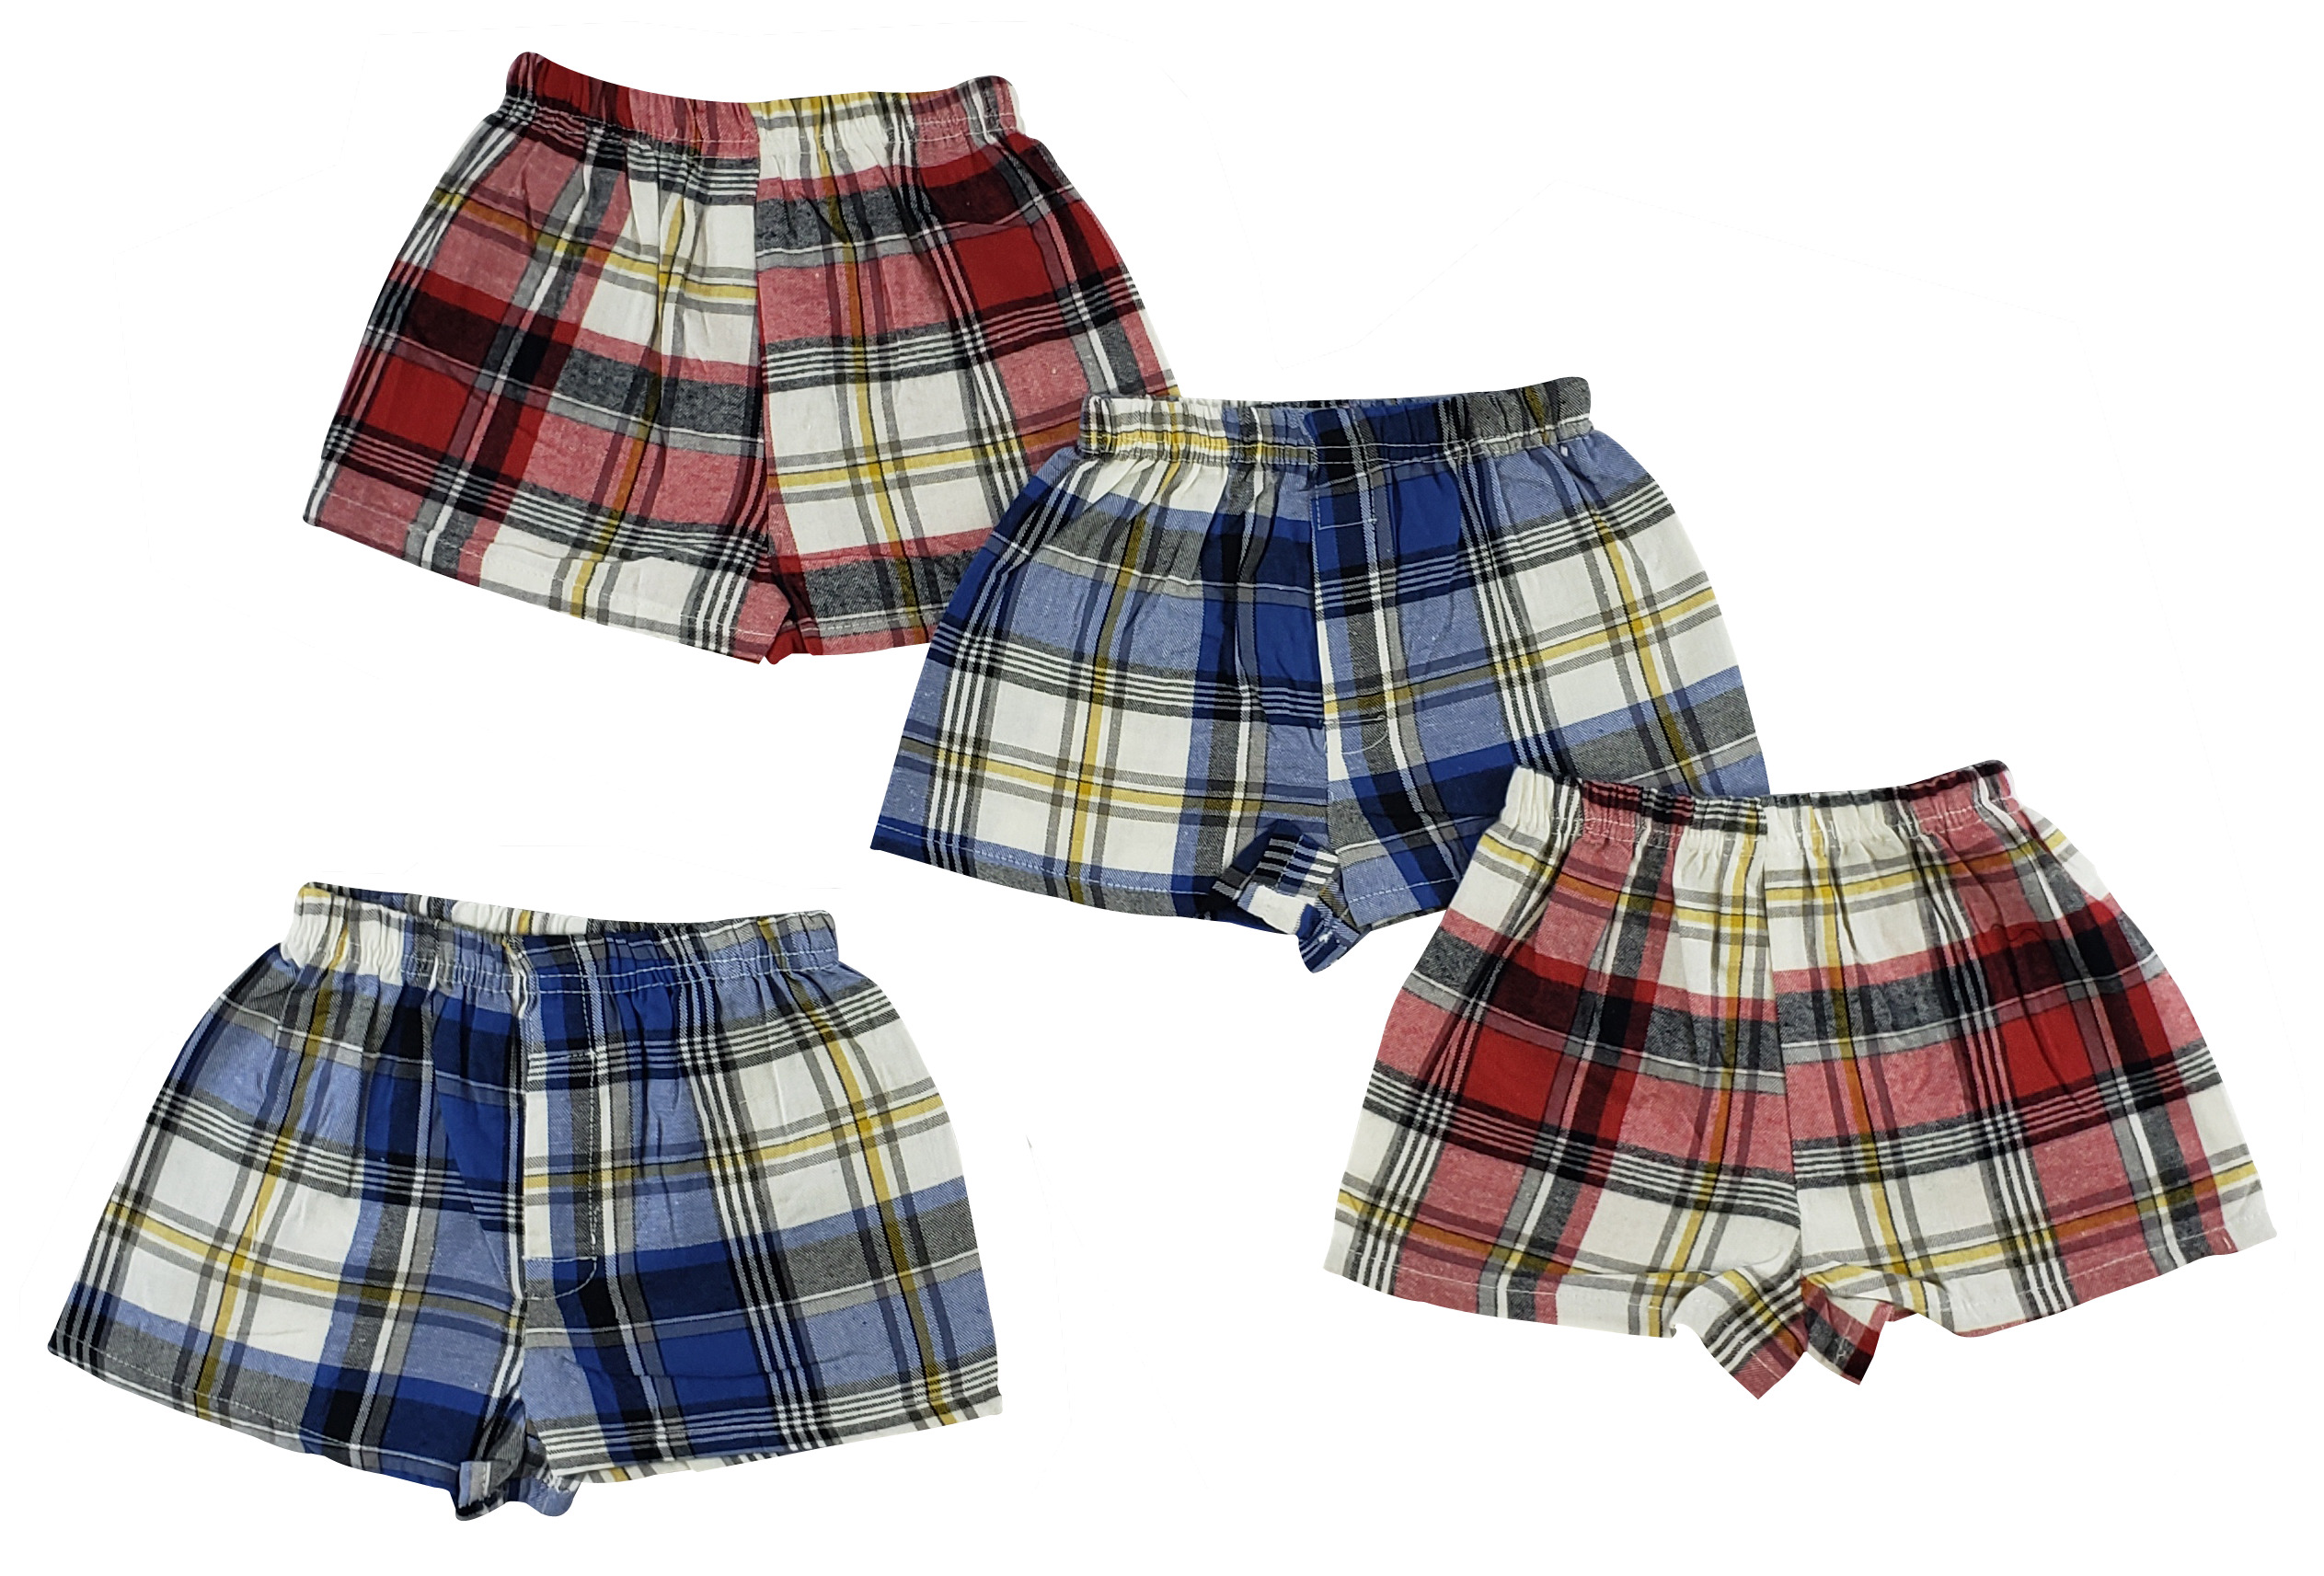 Toddler Boxer Shorts - 4 Pc Set 763276258376 | eBay